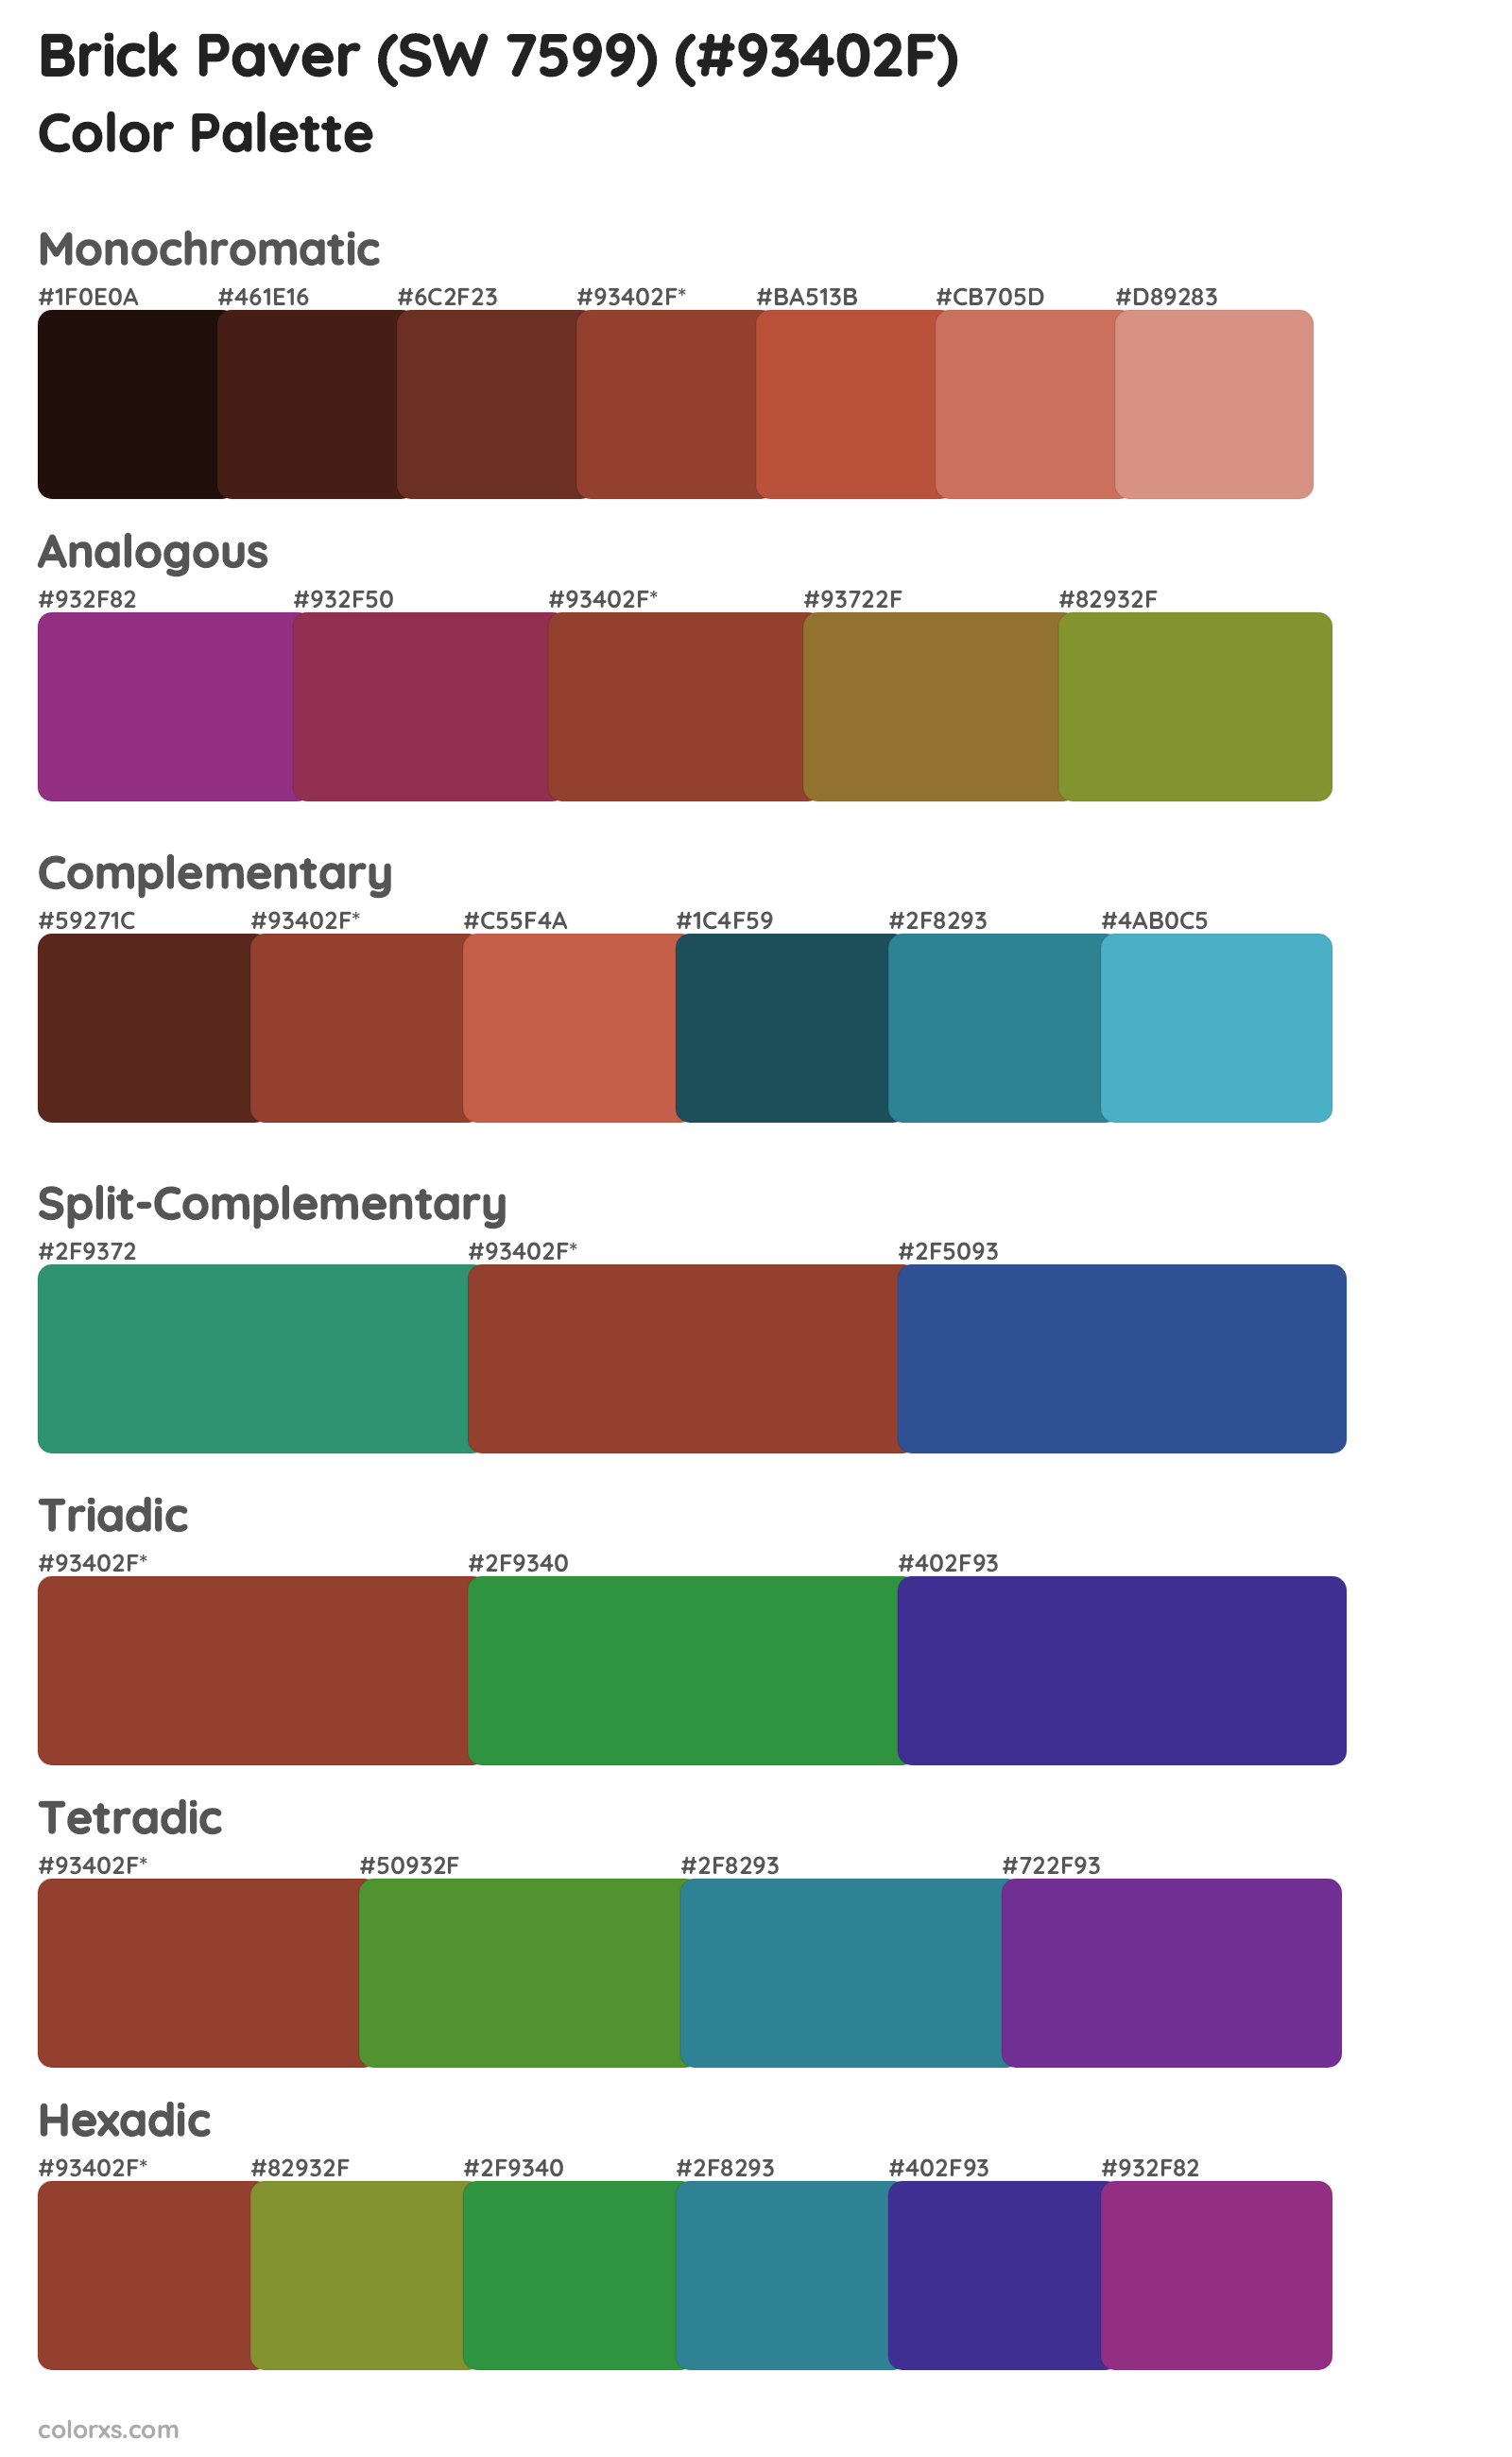 Brick Paver (SW 7599) Color Scheme Palettes